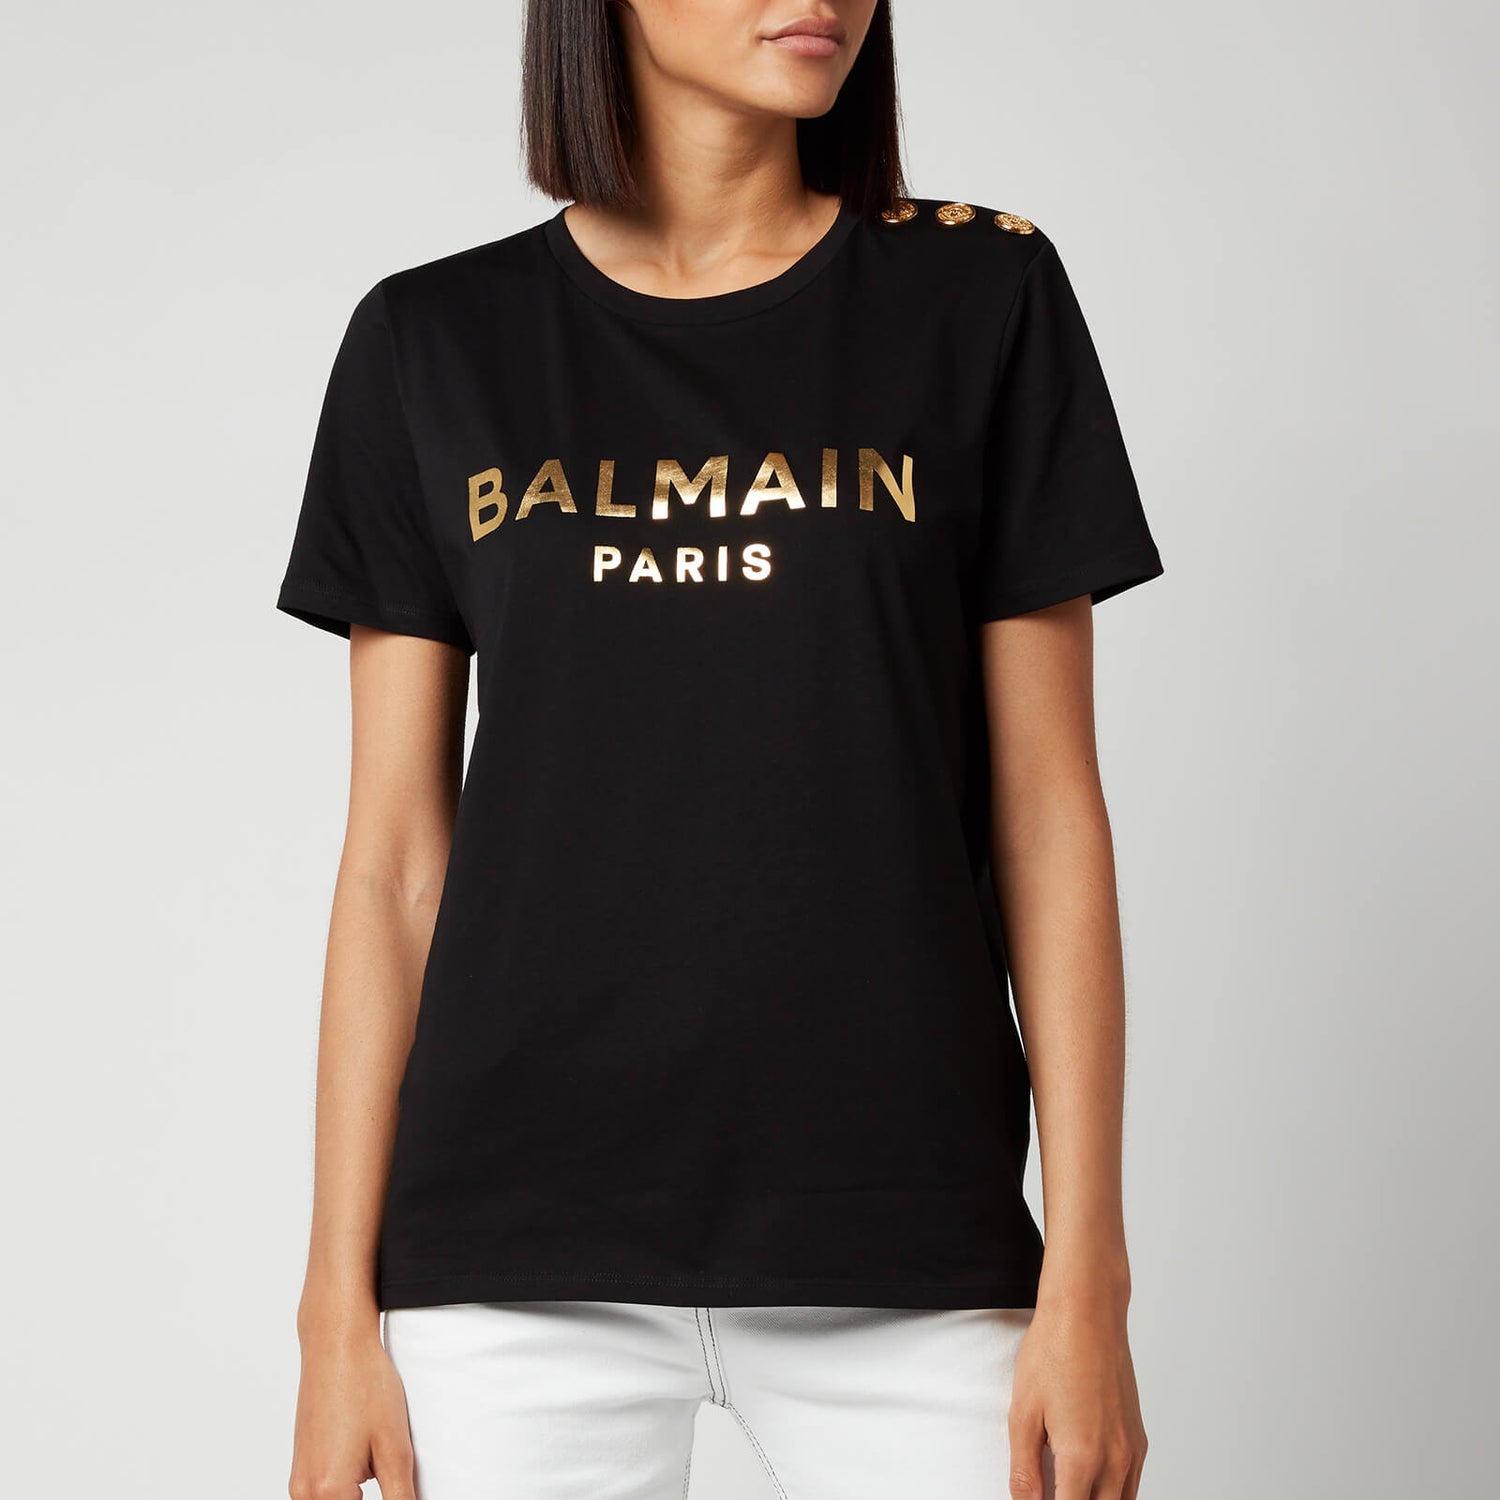 Balmain Women's Short Sleeve 3 Button Metallic Logo T-Shirt - Noir/Or